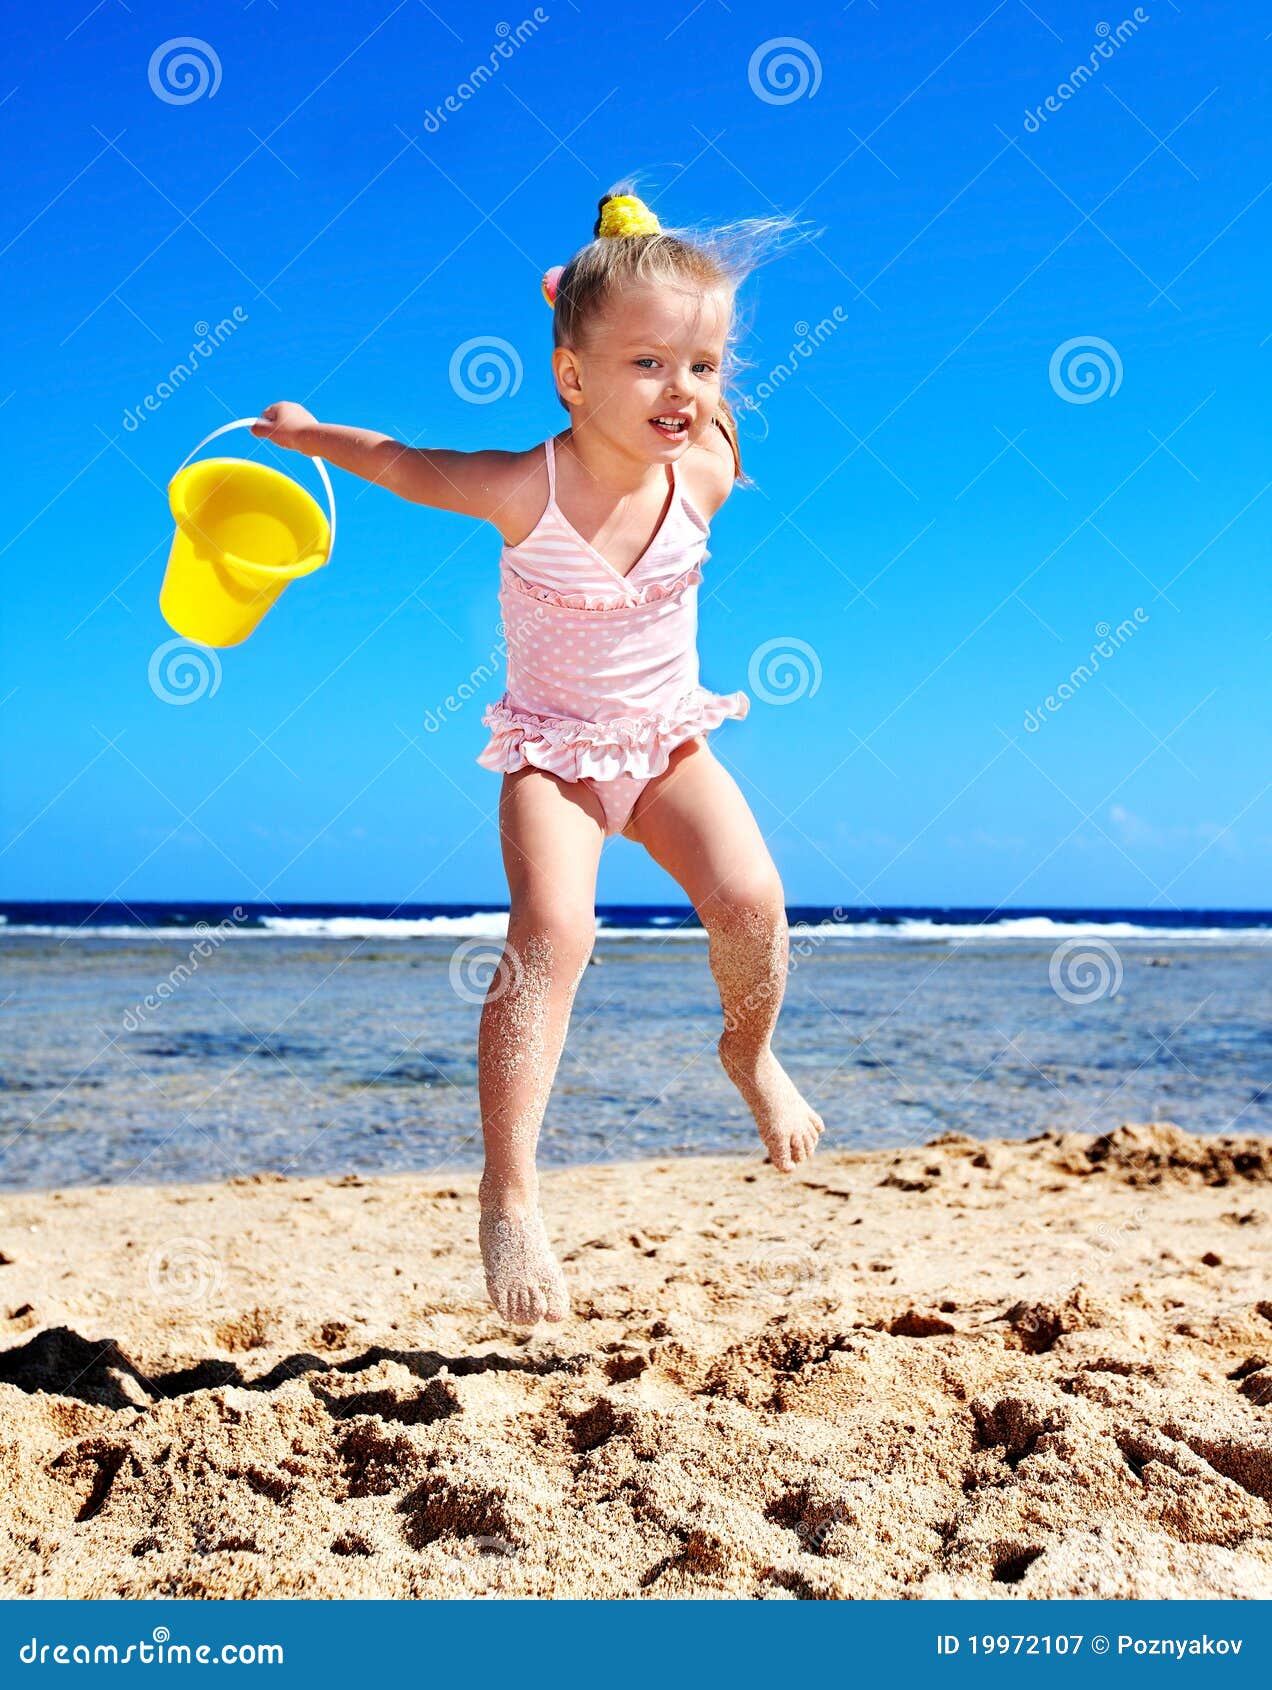 фото детей на голом пляже фото 5